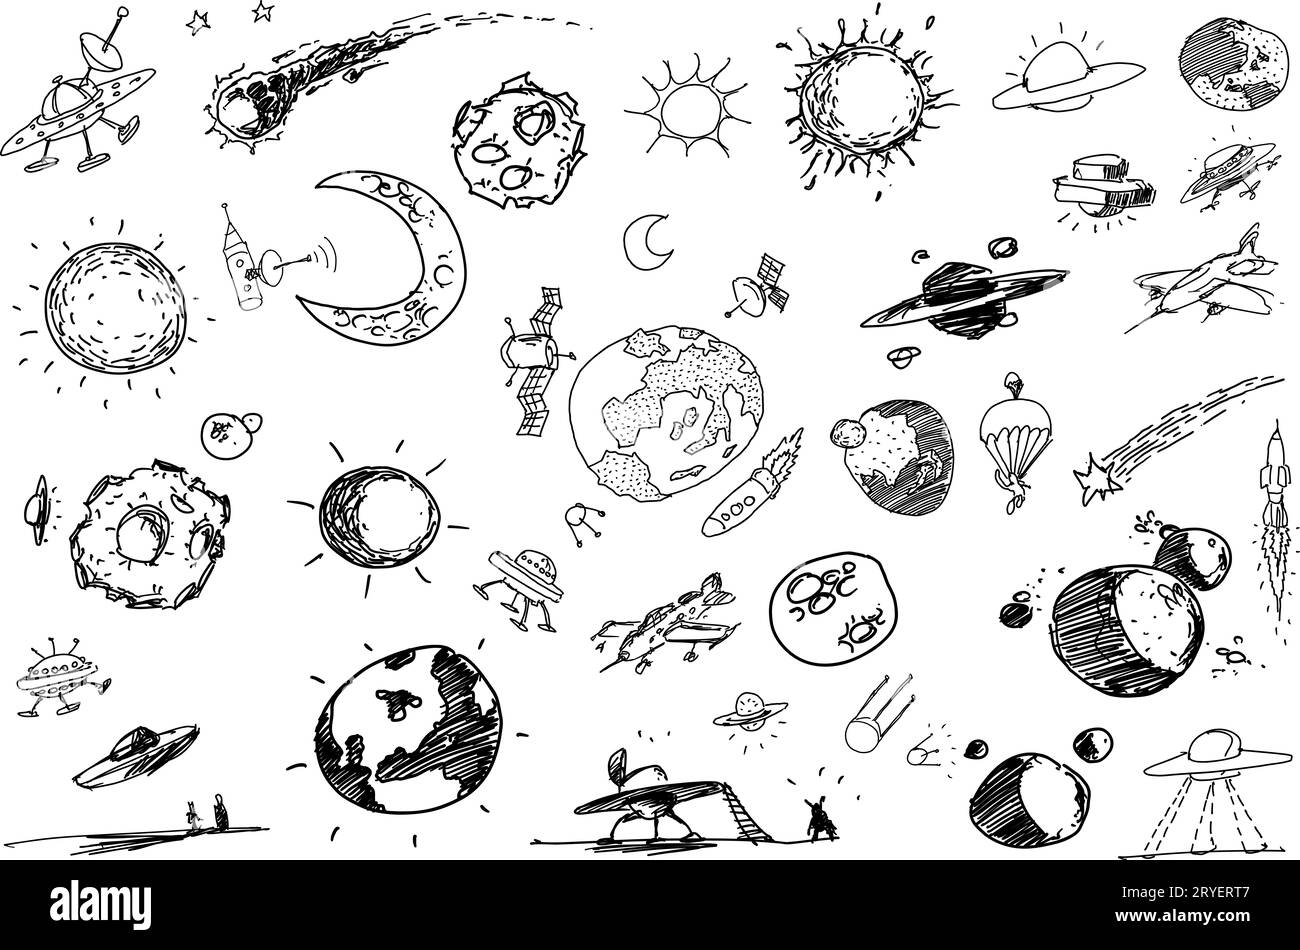 Viele Skizzen und Kritzeleien über Raum und Planeten sowie Ufos und Raketen Stockfoto